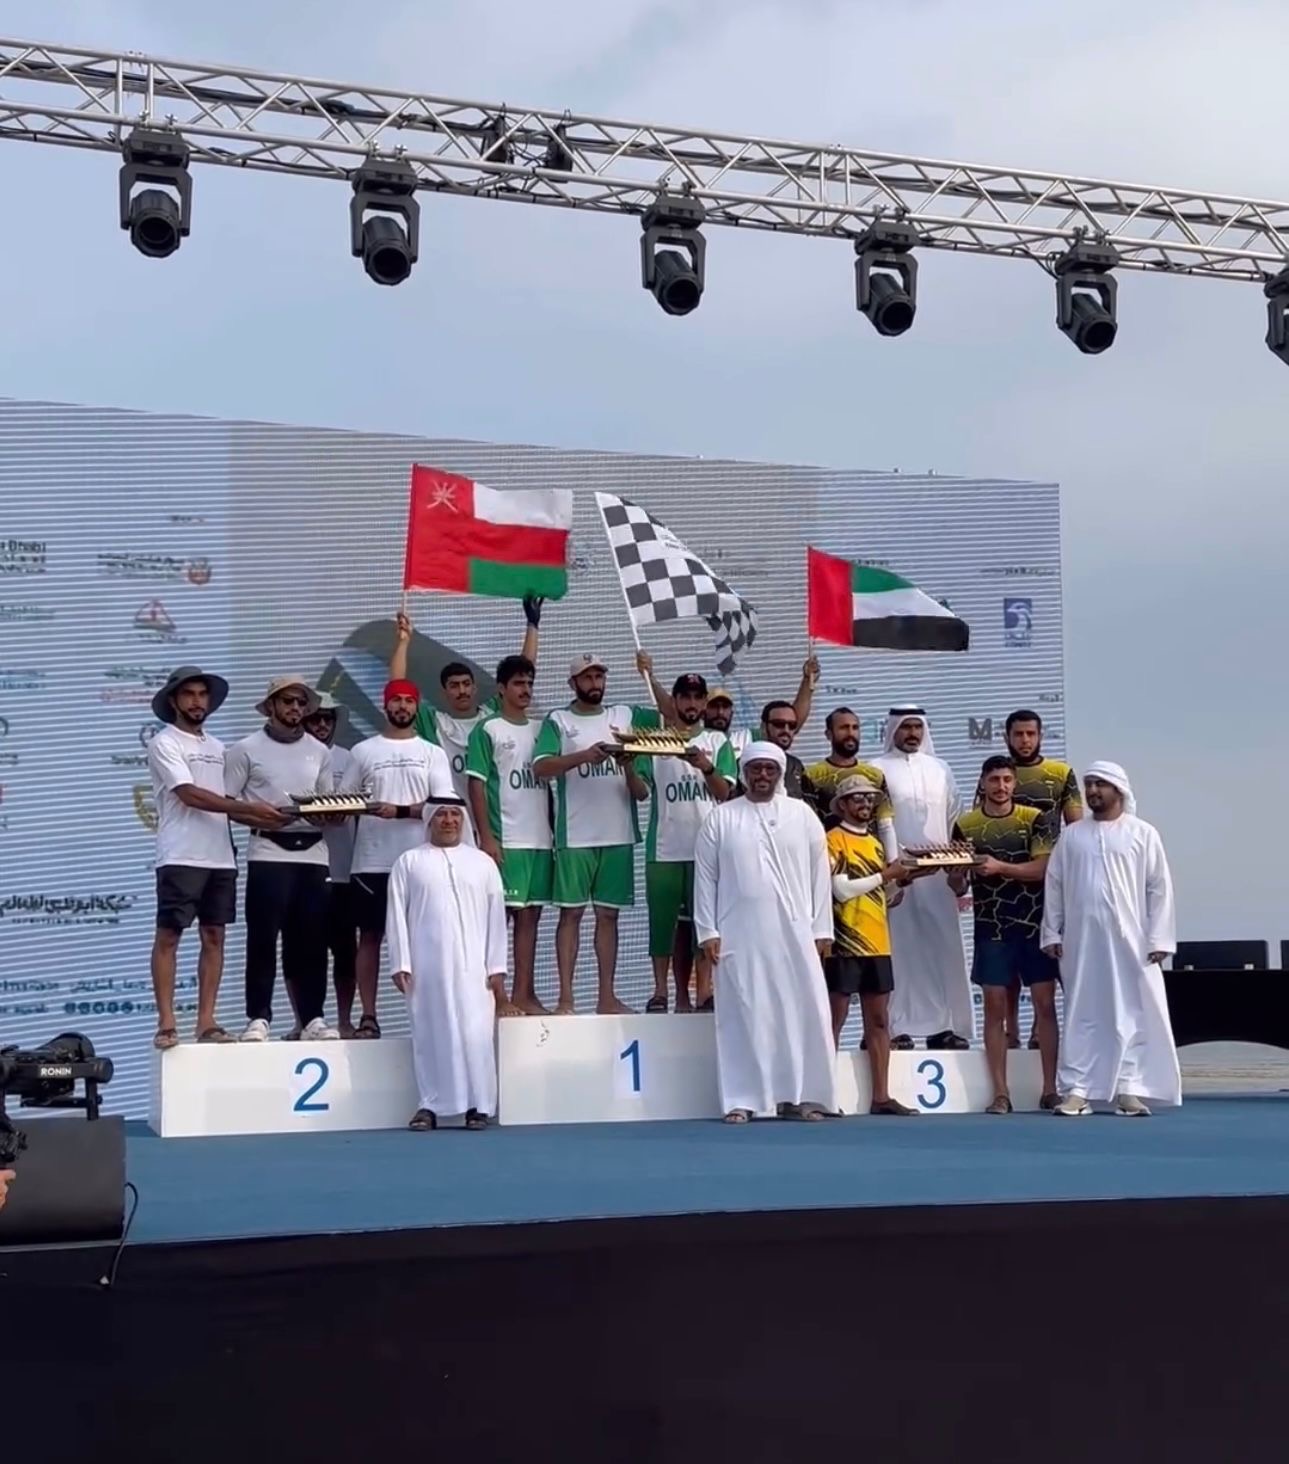 فريق شباب صُحار للتجديف يتوّج بالمركز الأول بسباق التجديف التراثي بدولة الإمارات العربية المتحدة